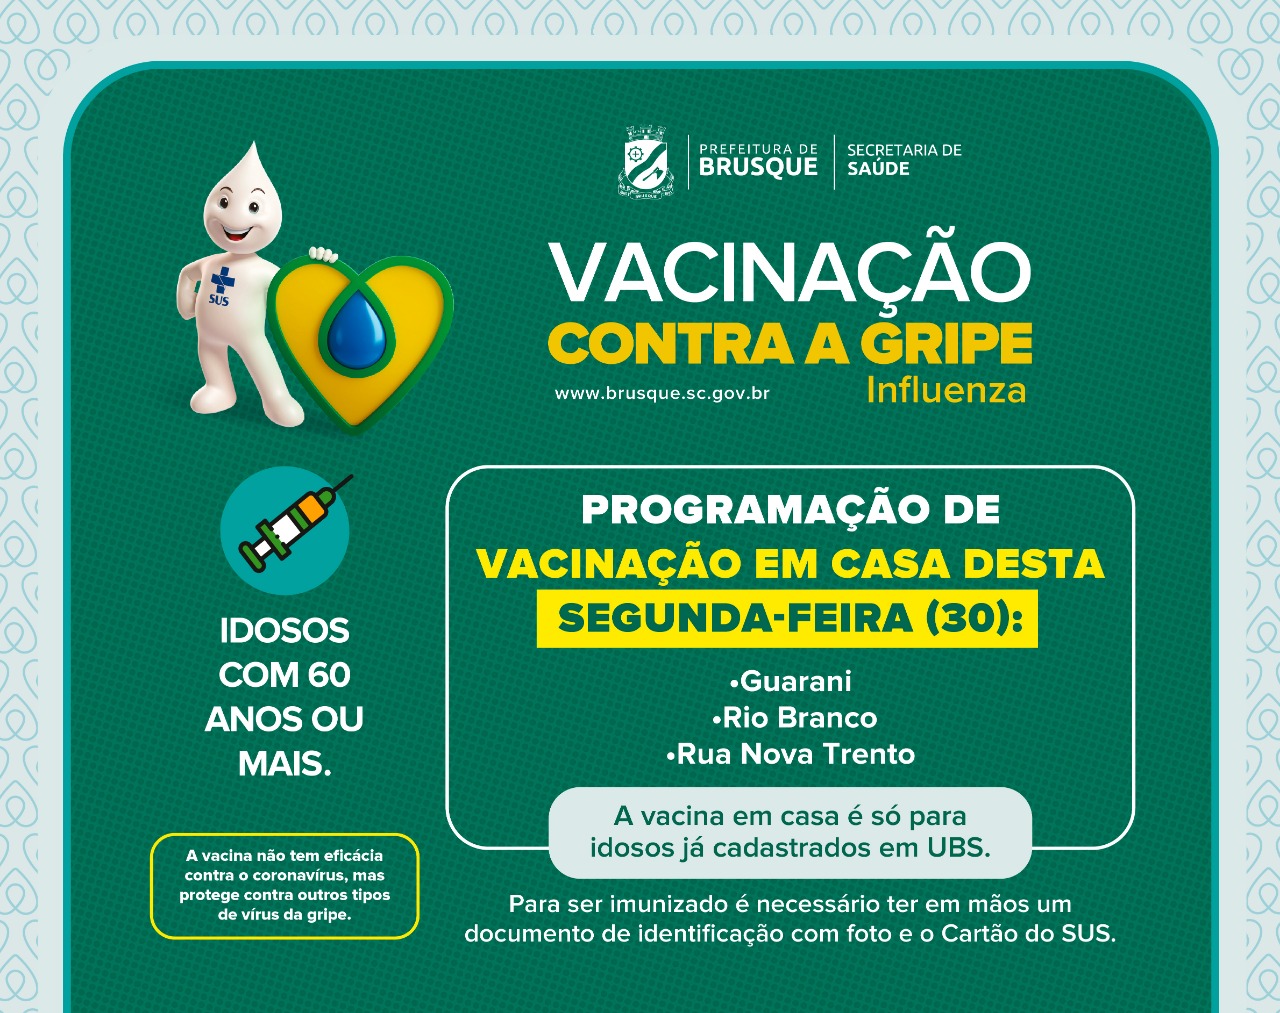 Idosos dos bairros Guarani, Rio Branco e rua Nova Trento recebem vacina em casa